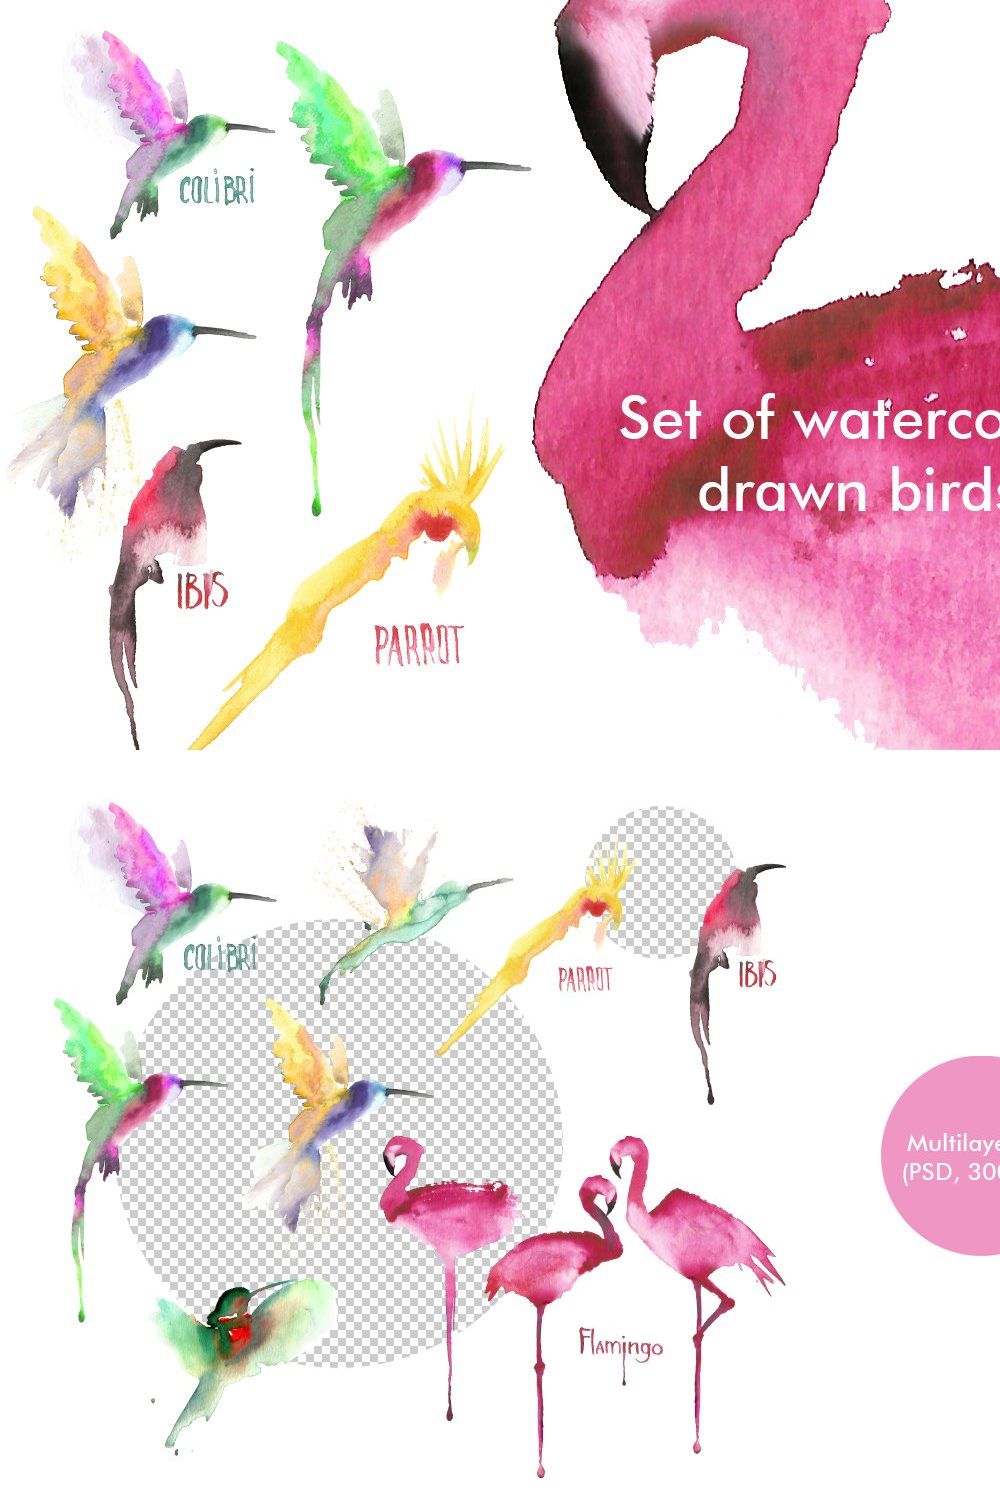 Watercolor birds set pinterest preview image.